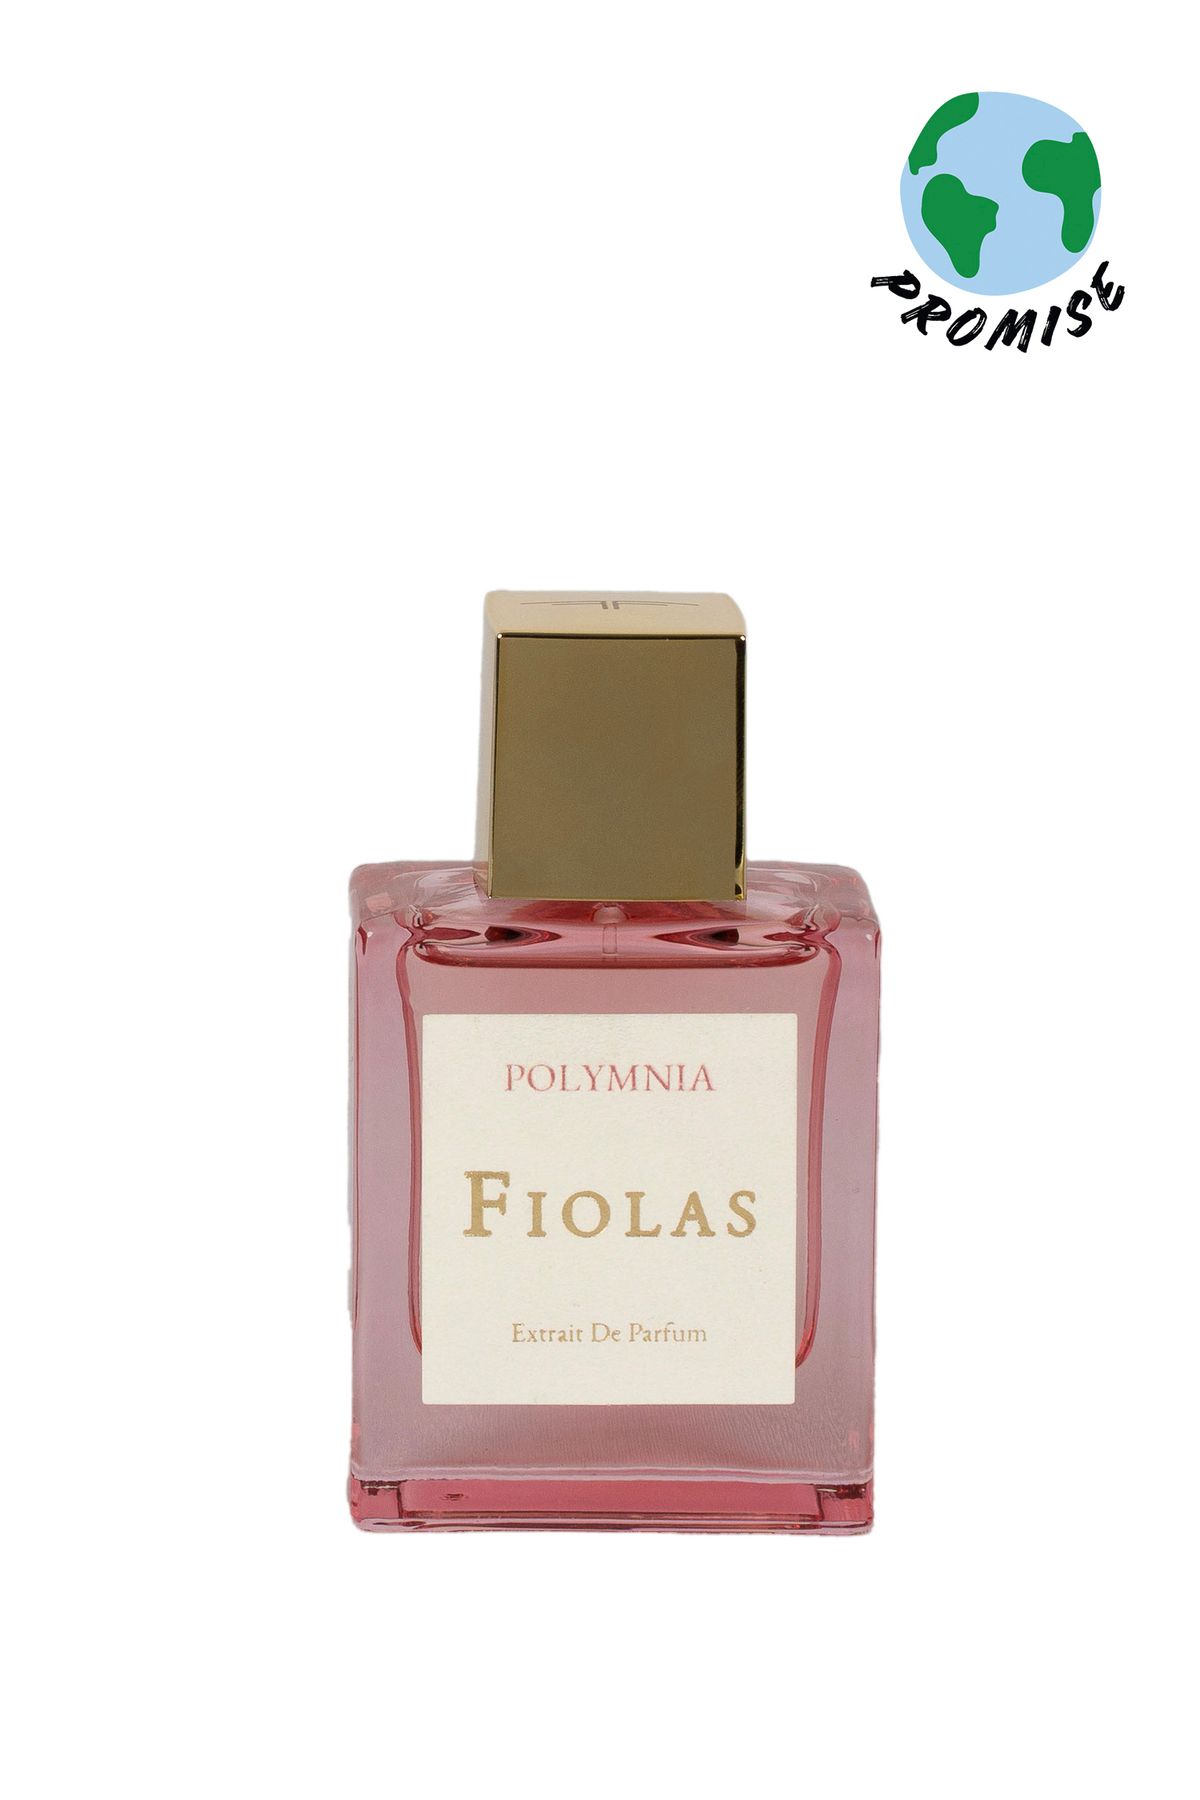 Fiolas Polymnia Extrait De Parfum